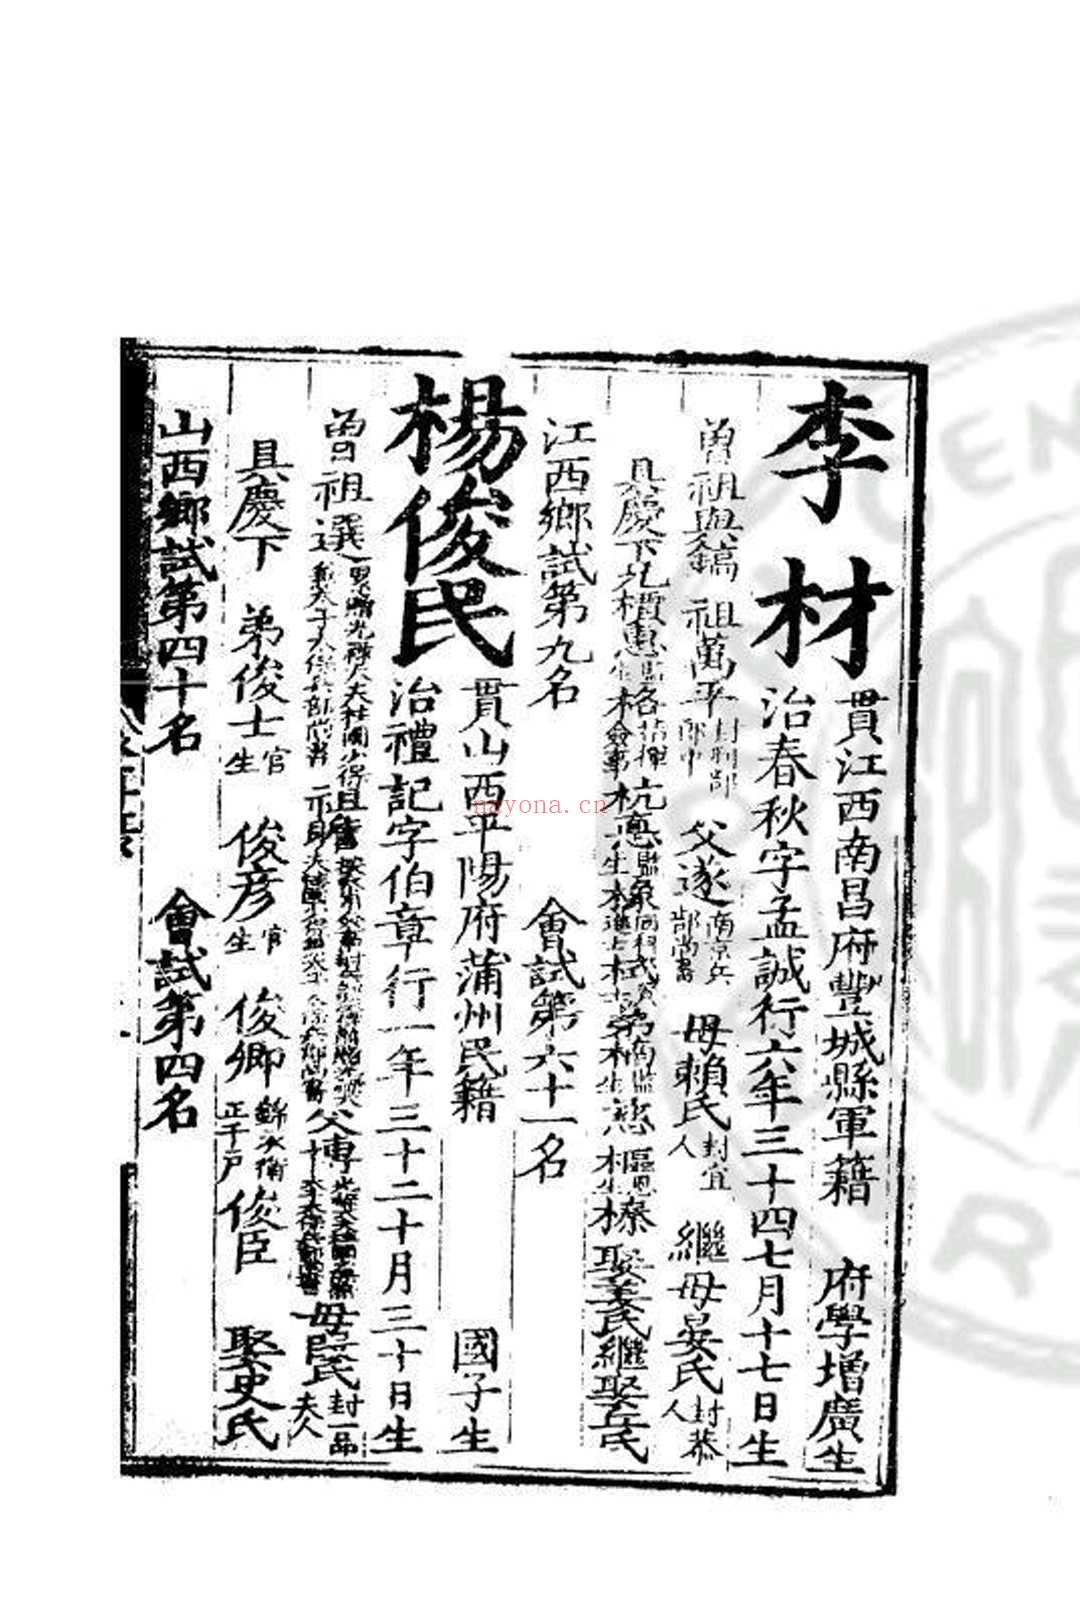 嘉靖四十一年进士登科录 (明)严讷编 明嘉靖间(1522-1566)刊本 (嘉靖四十一年进士名单)